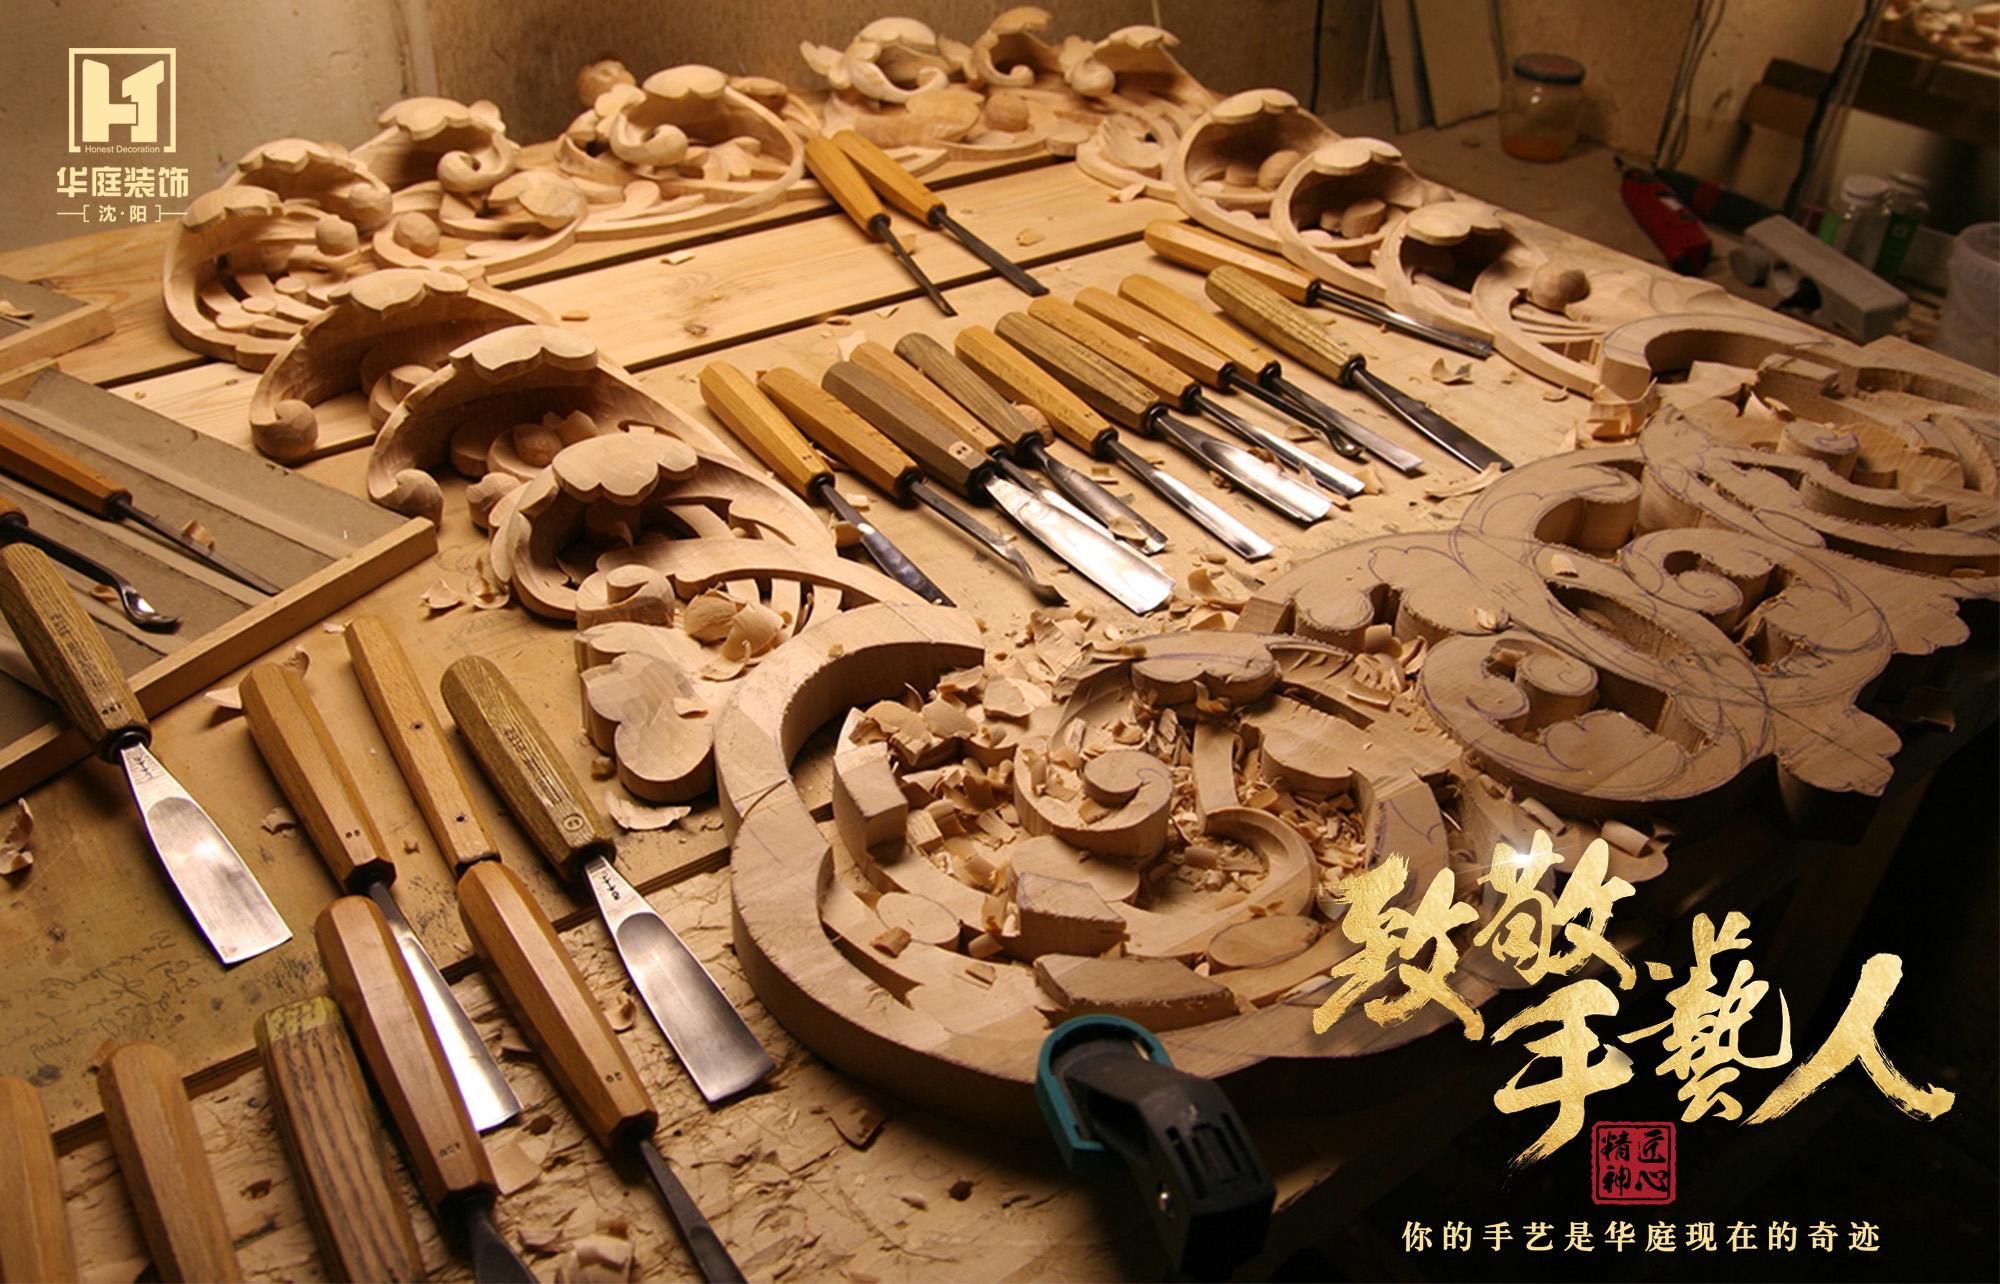 毛笔是中华文明的独特产物，是古代先民独创的书写工具，也是自古以来重要的一种记录和展示图文信息的工具。-彭南科-彭南科-哔哩哔哩视频